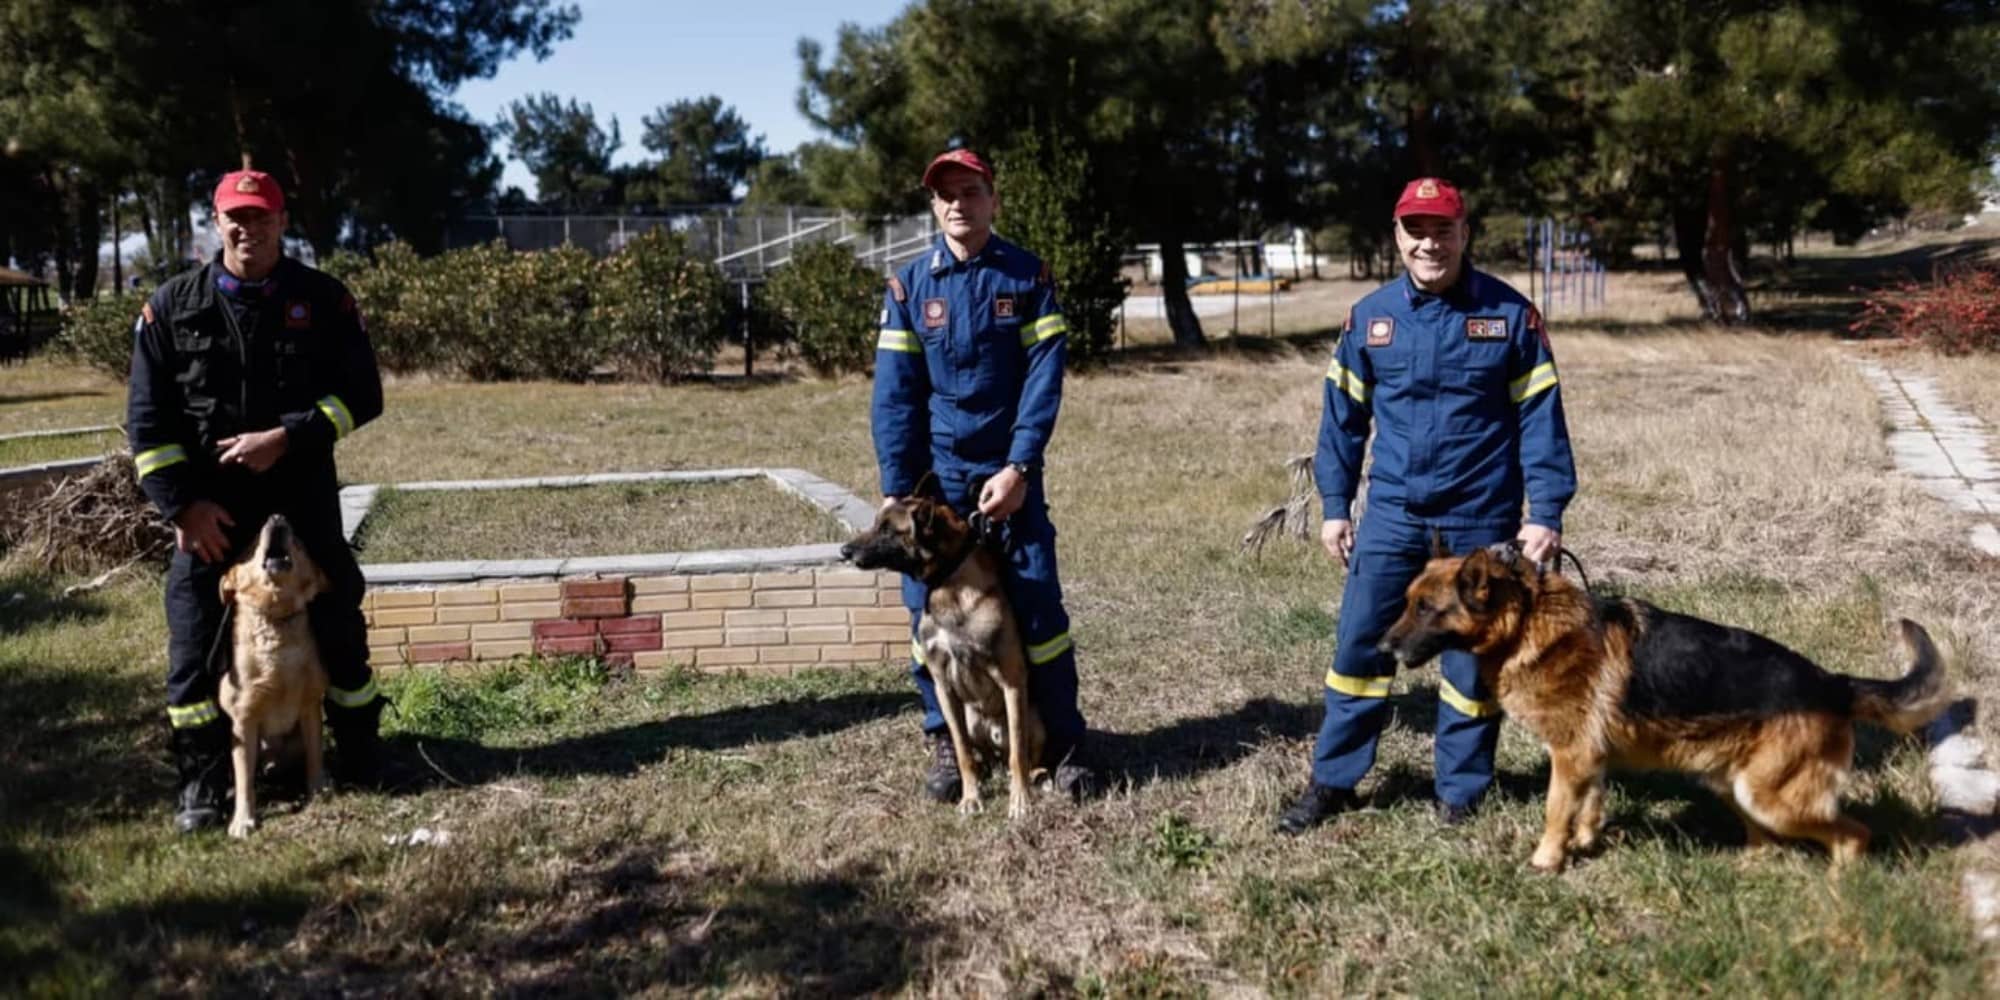 Φιντέλ, Τάλως, Έκτωρ: Τα σκυλιά της 2ης ΕΜΑΚ που σώζουν ζωές (εικόνες)